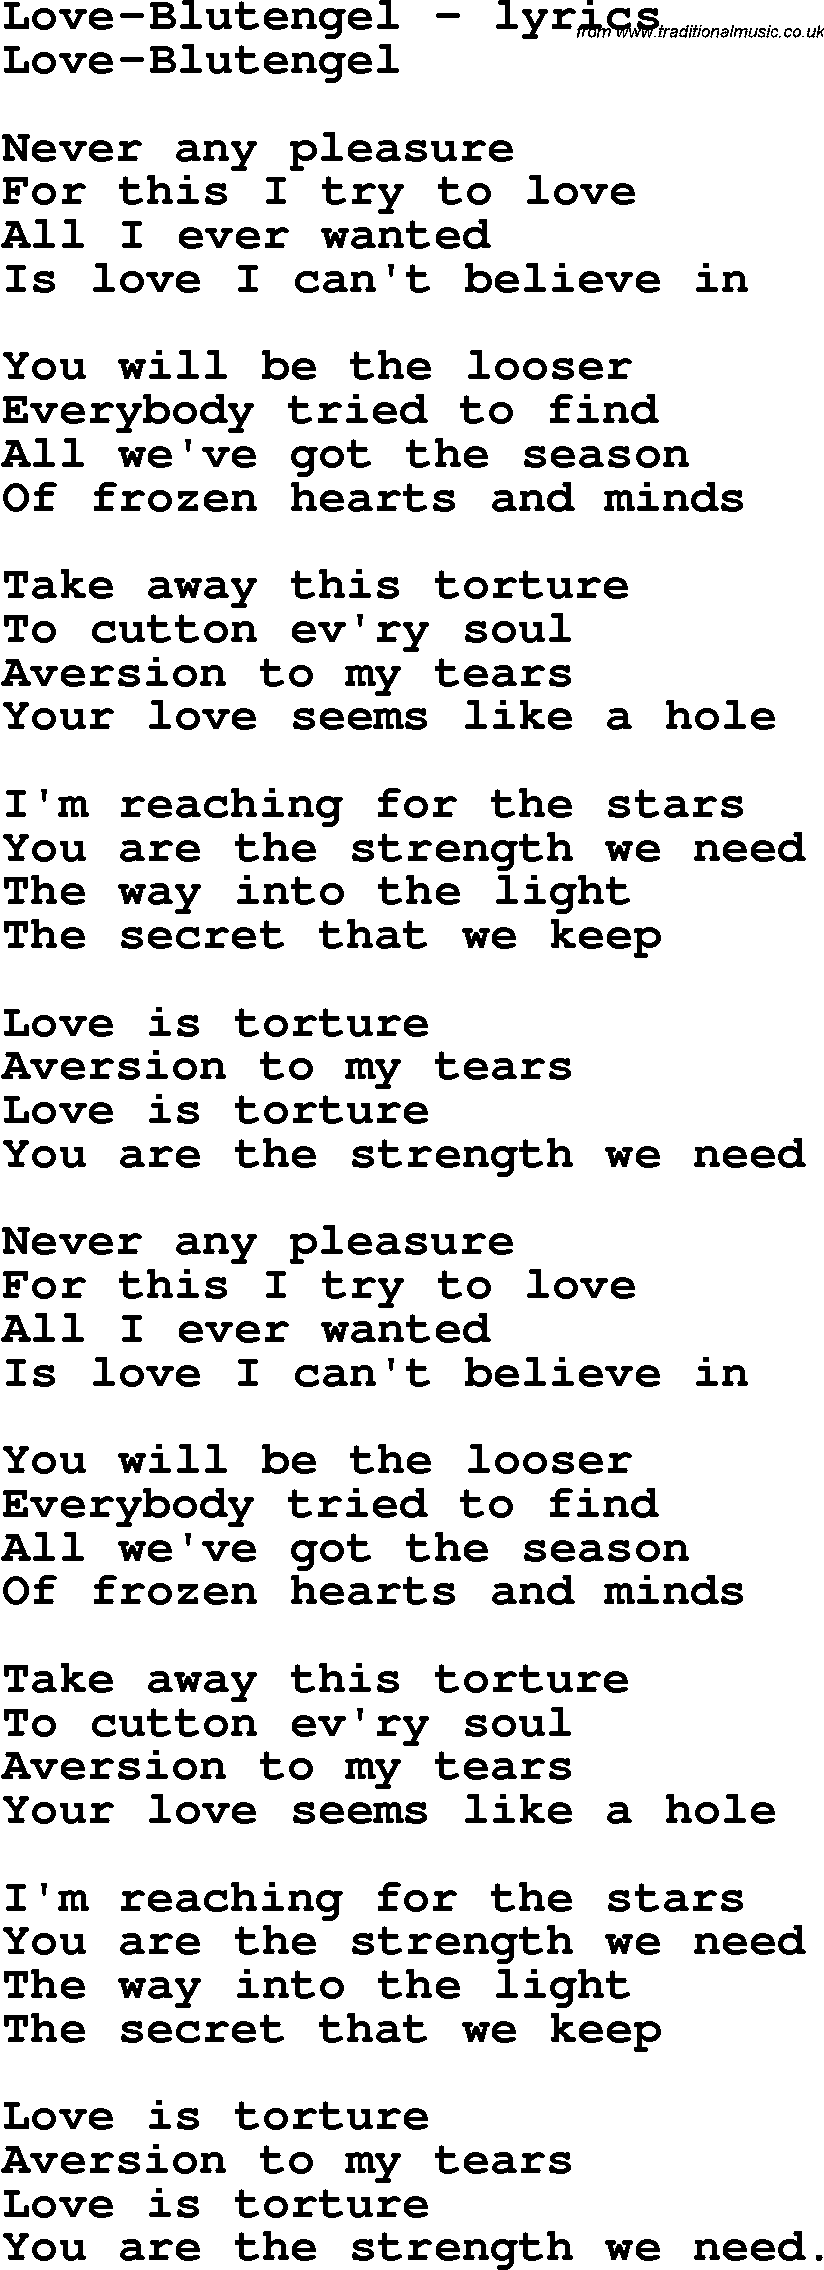 Love Song Lyrics for: Love-Blutengel